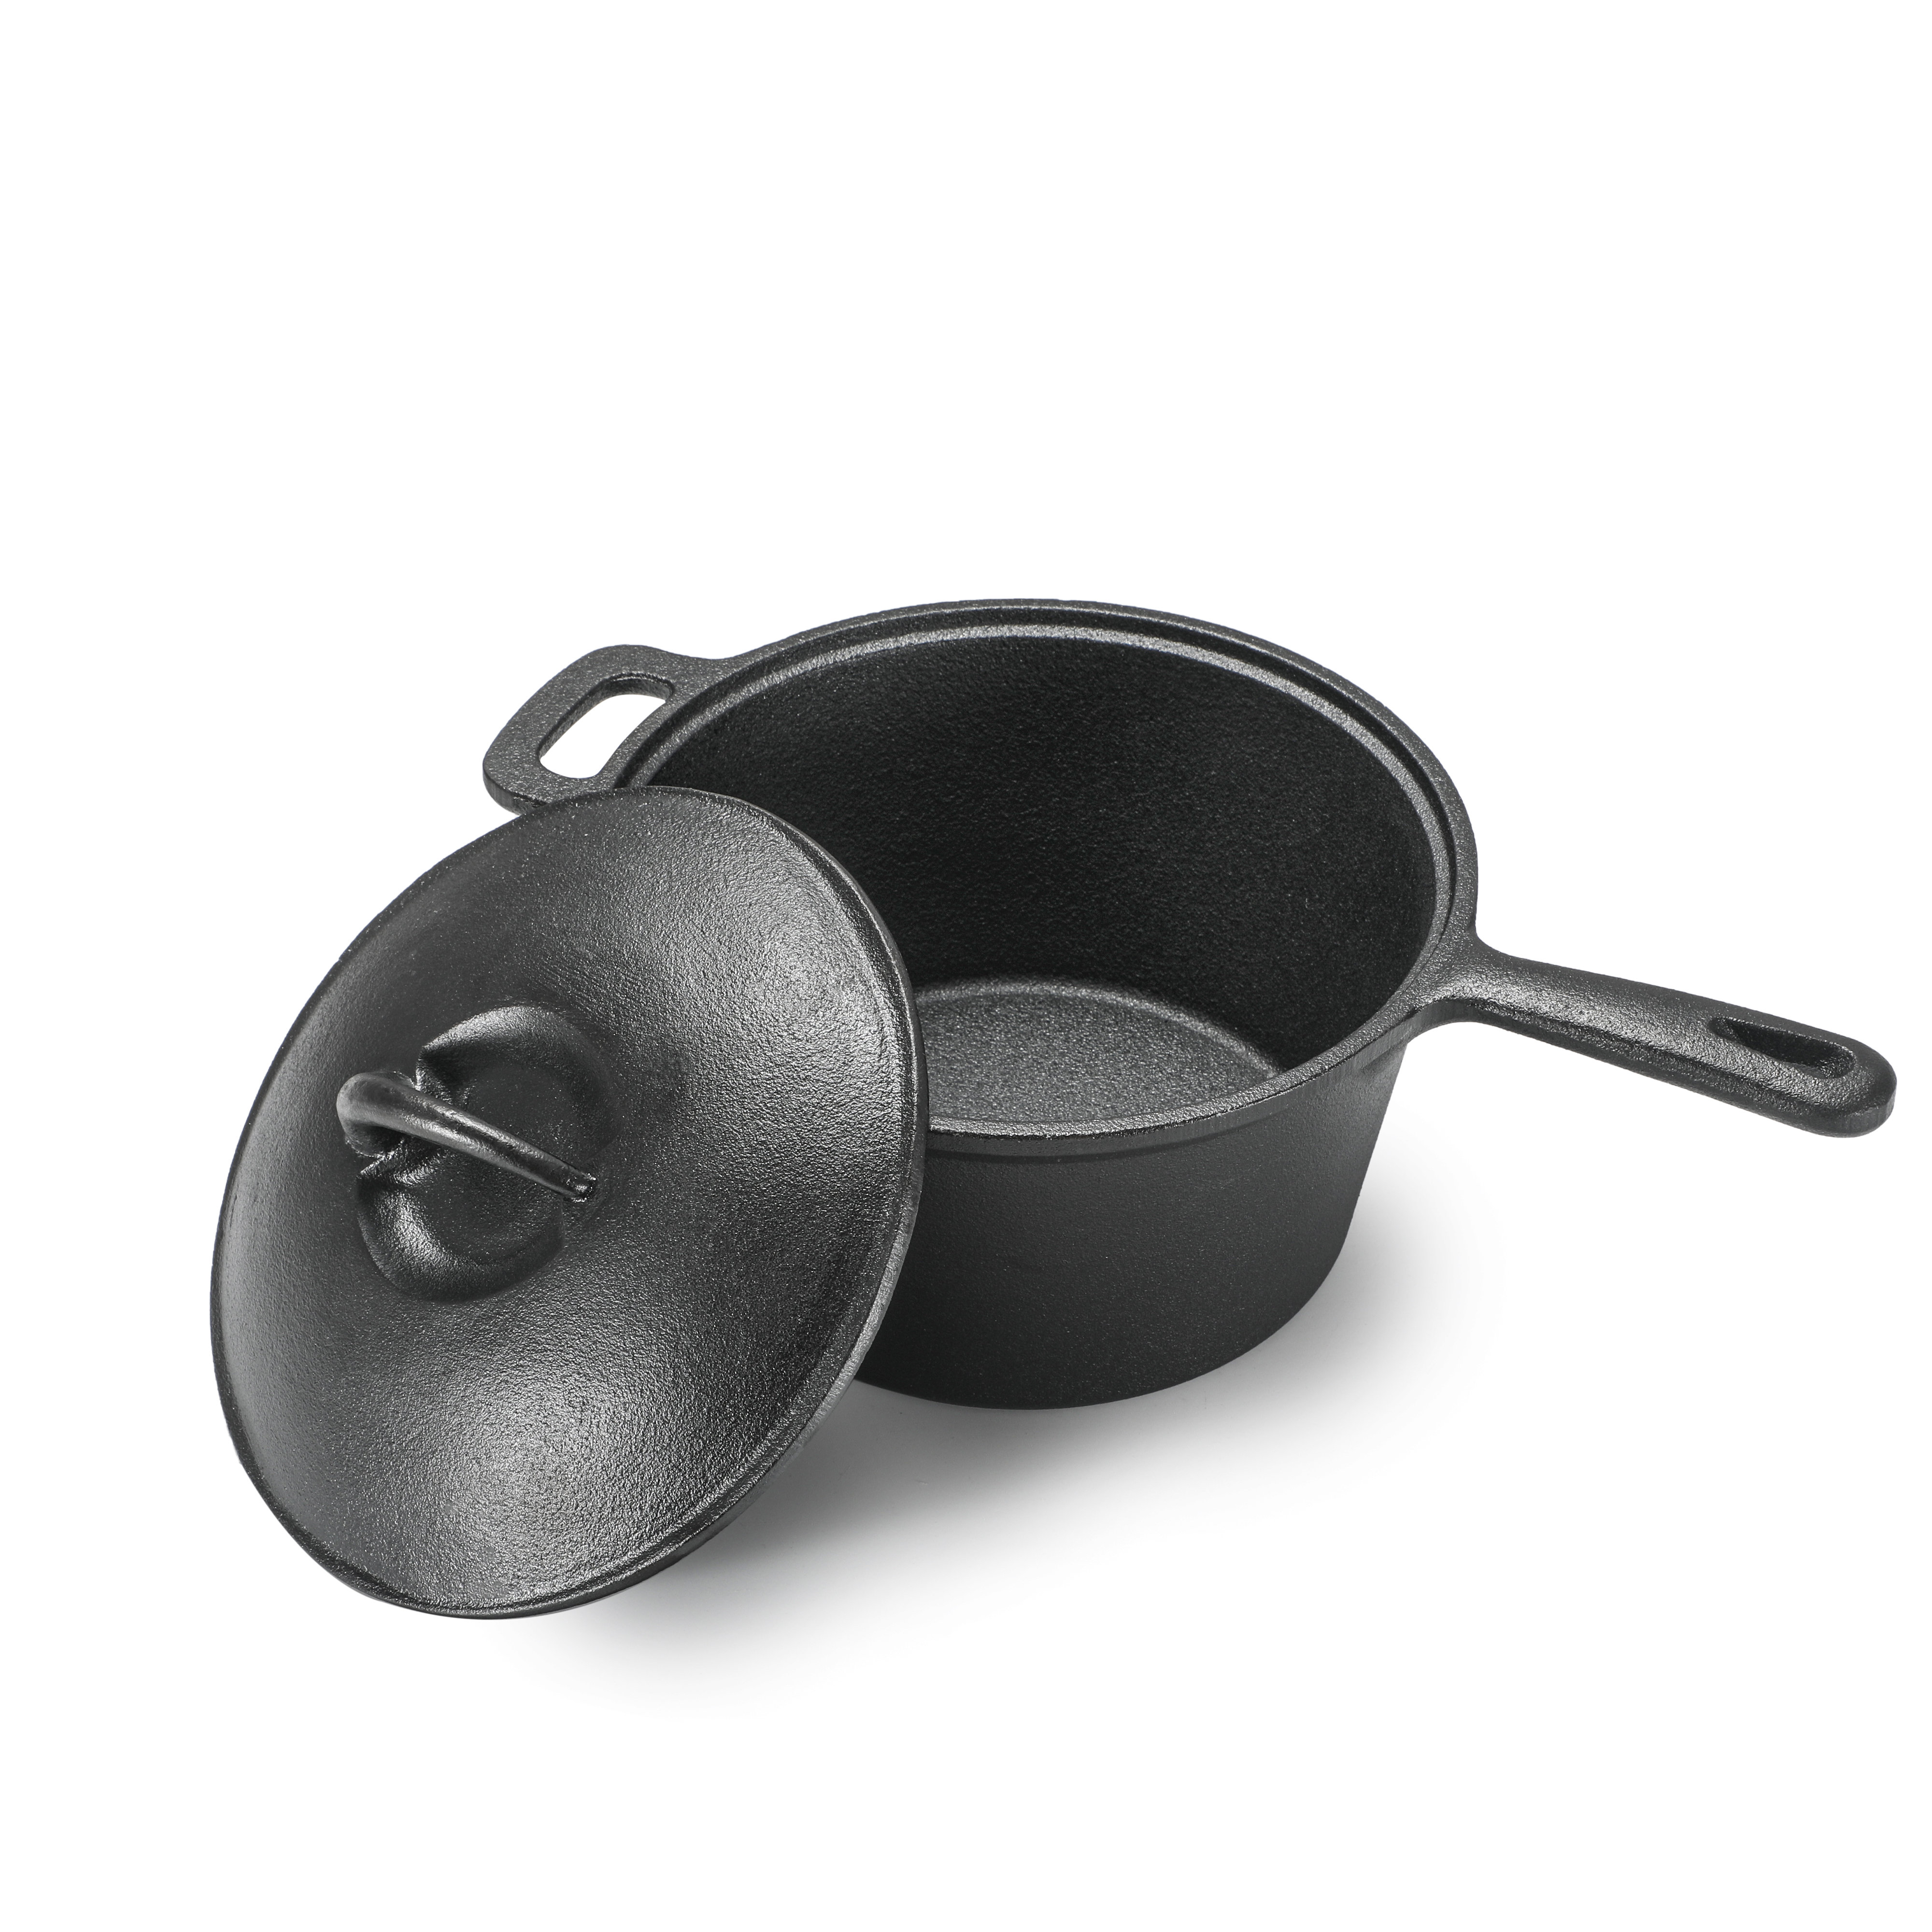 Lodge Pre-Seasoned Cast Iron Baking Pan with Loop Handles, 14, Black